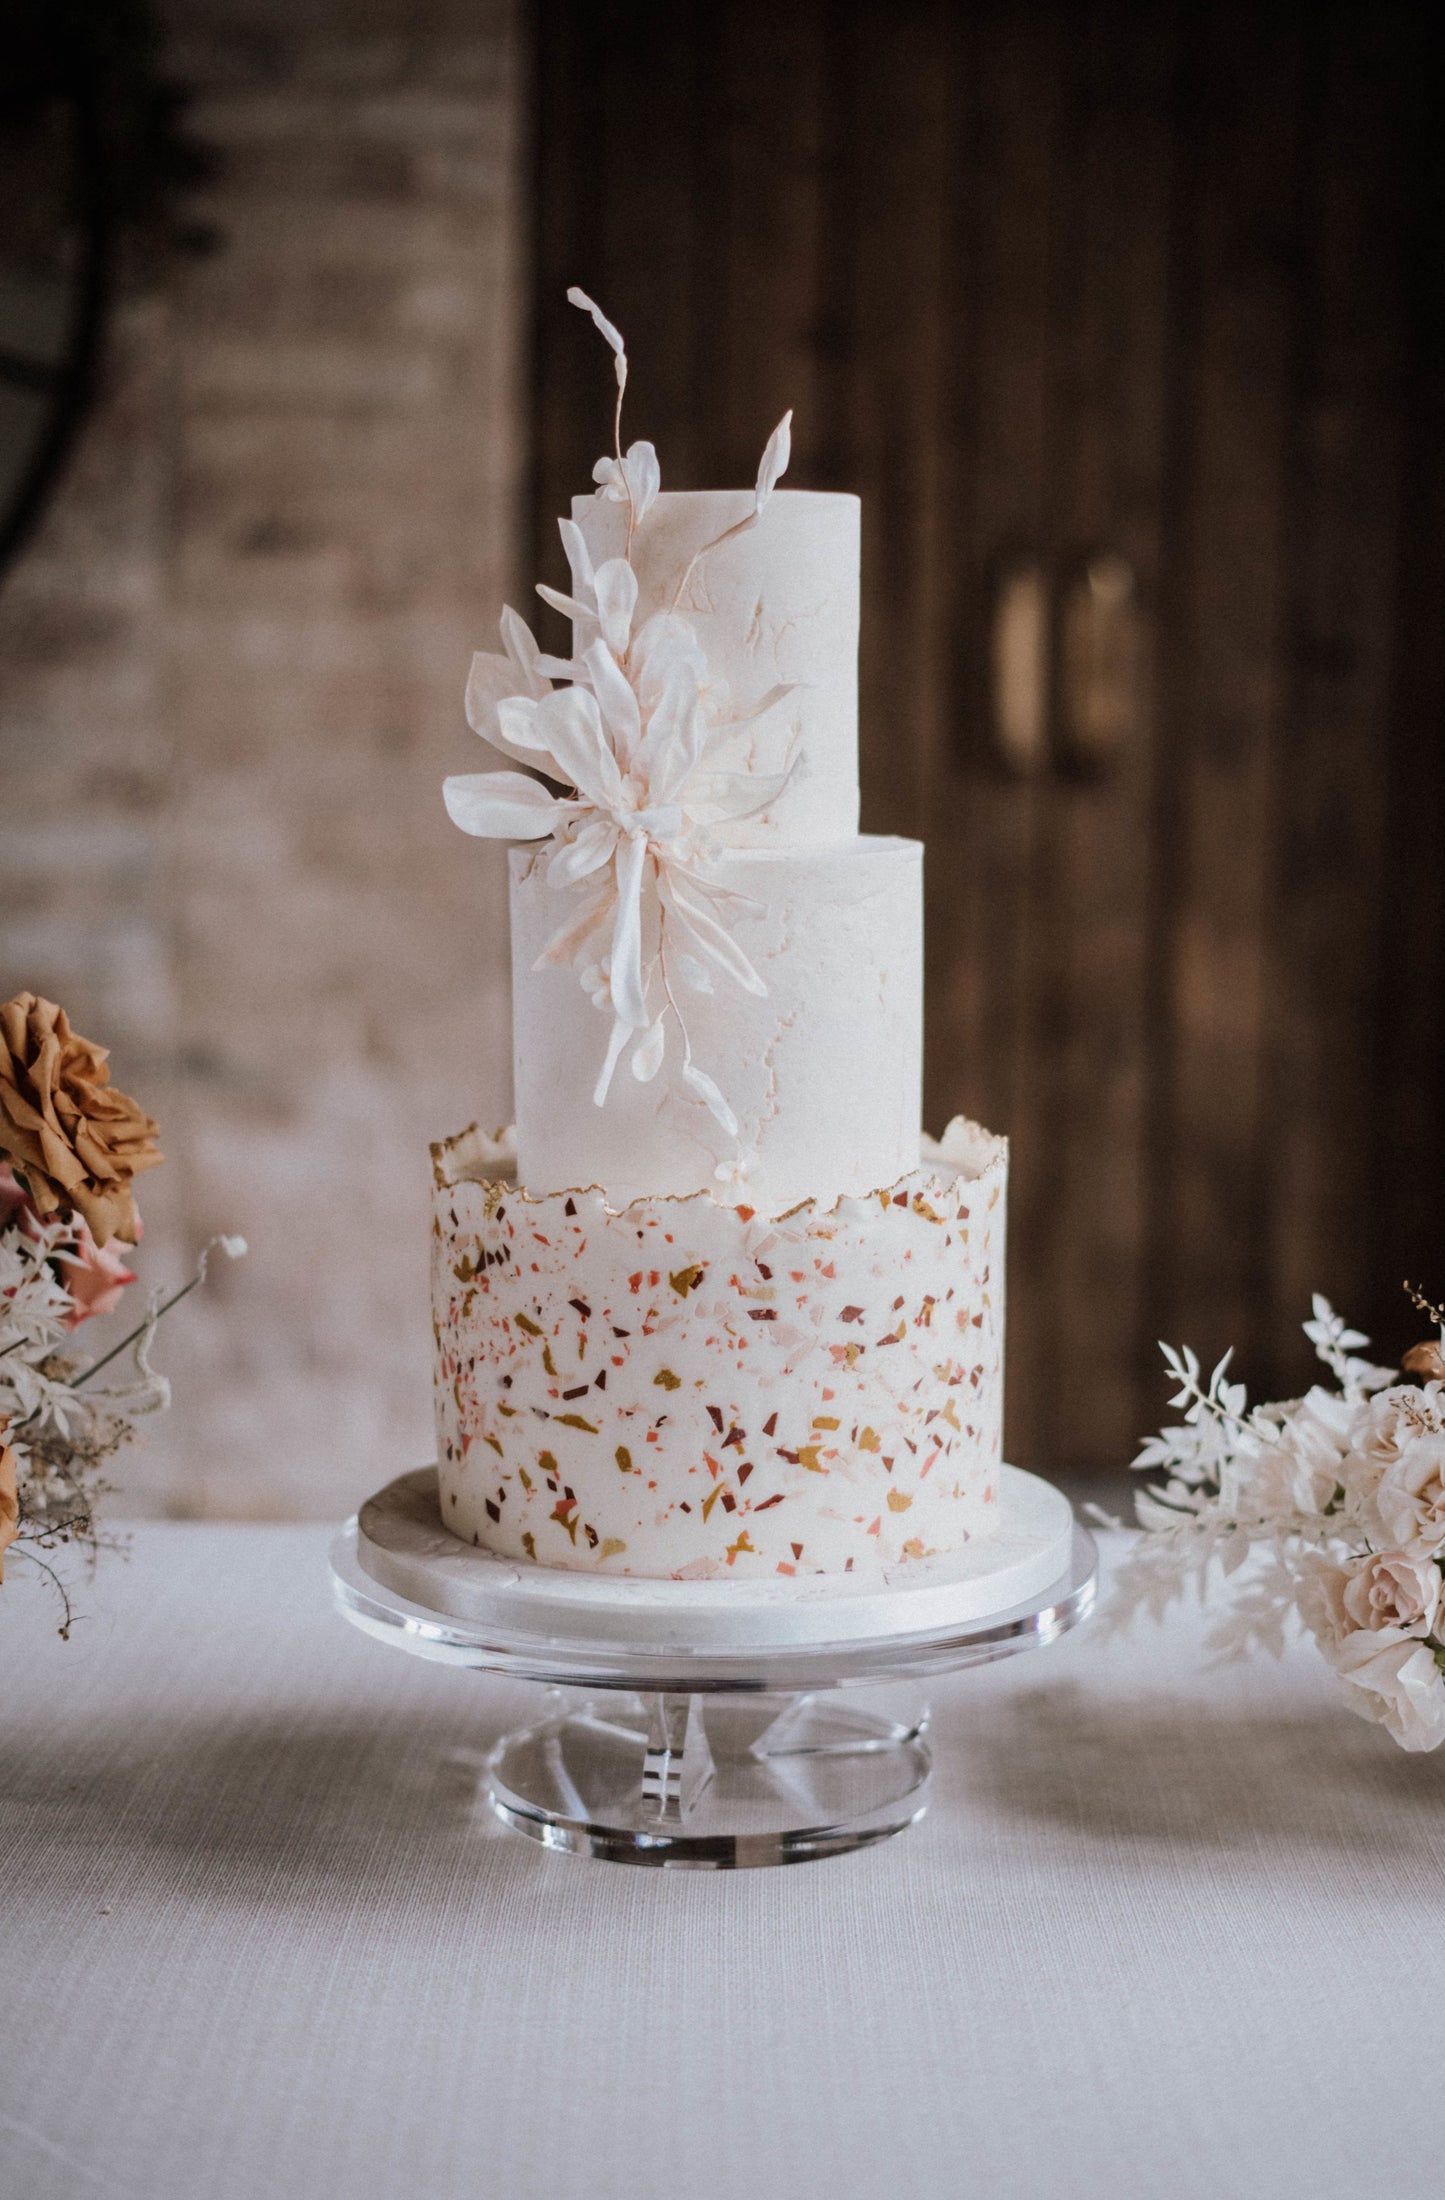 Terrazzo wedding cake from Saddleworth based Union Cakes